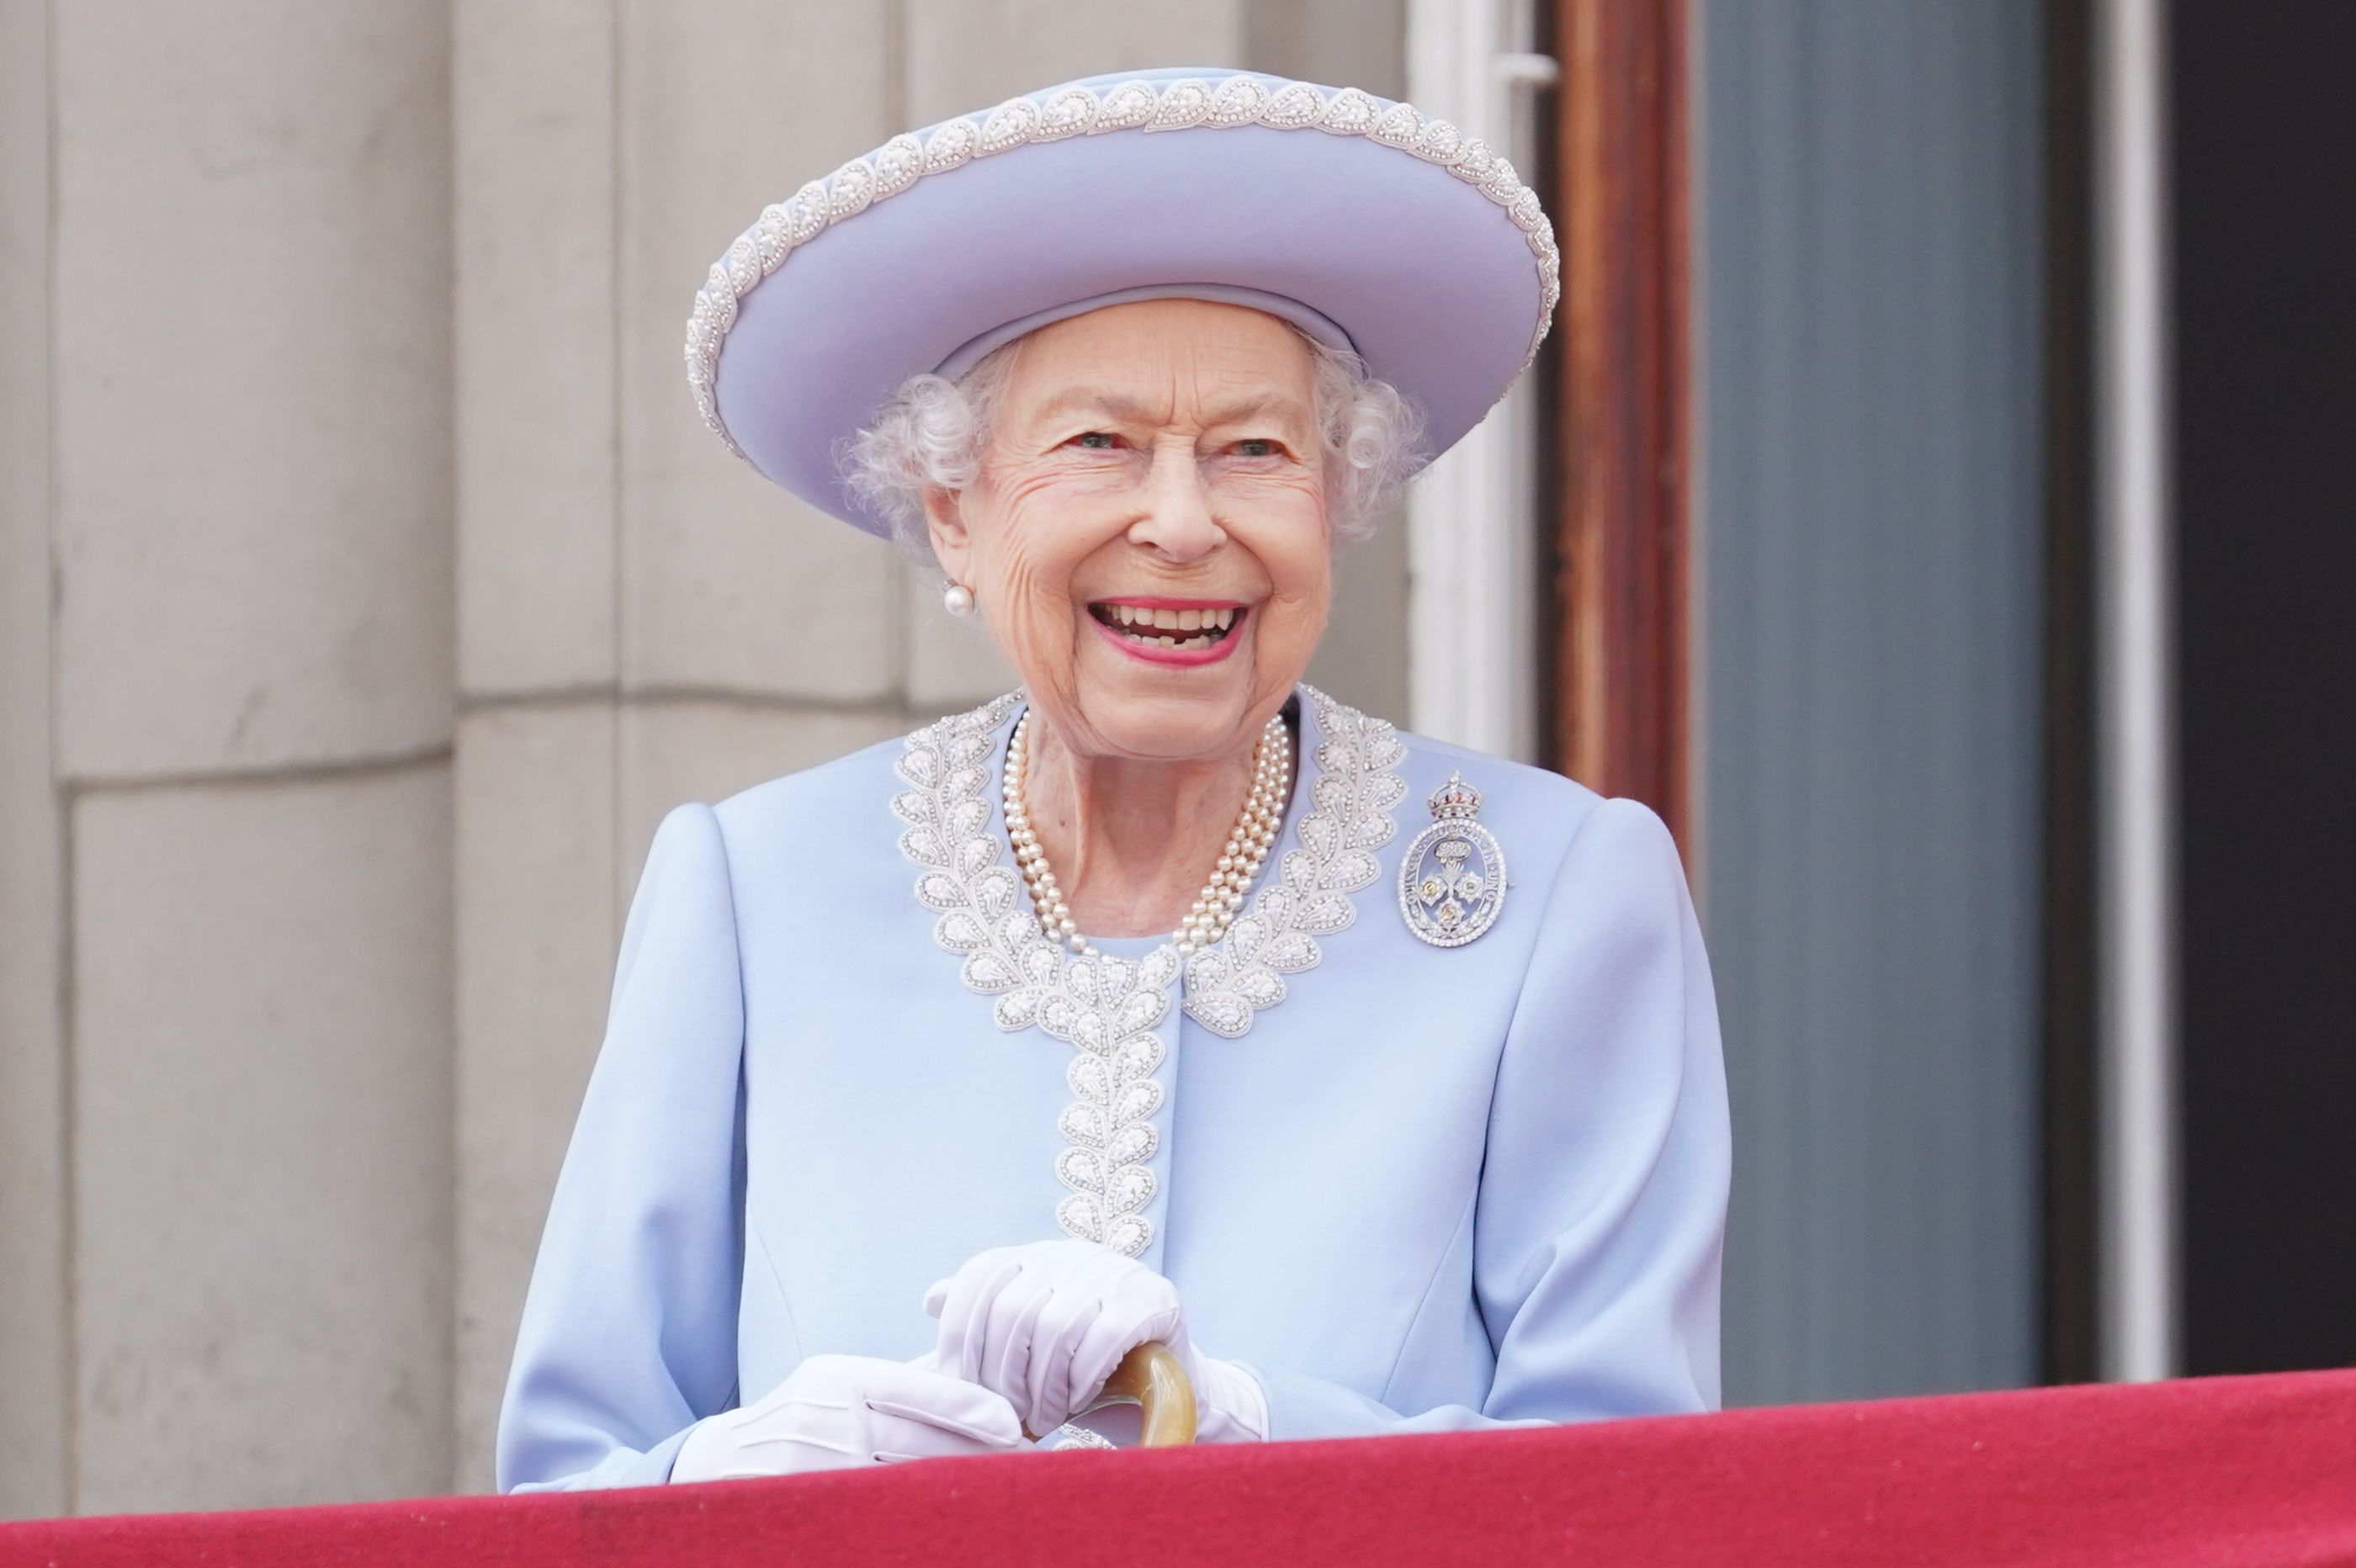 celebrity deaths in 2022 - queen's platinum jubilee